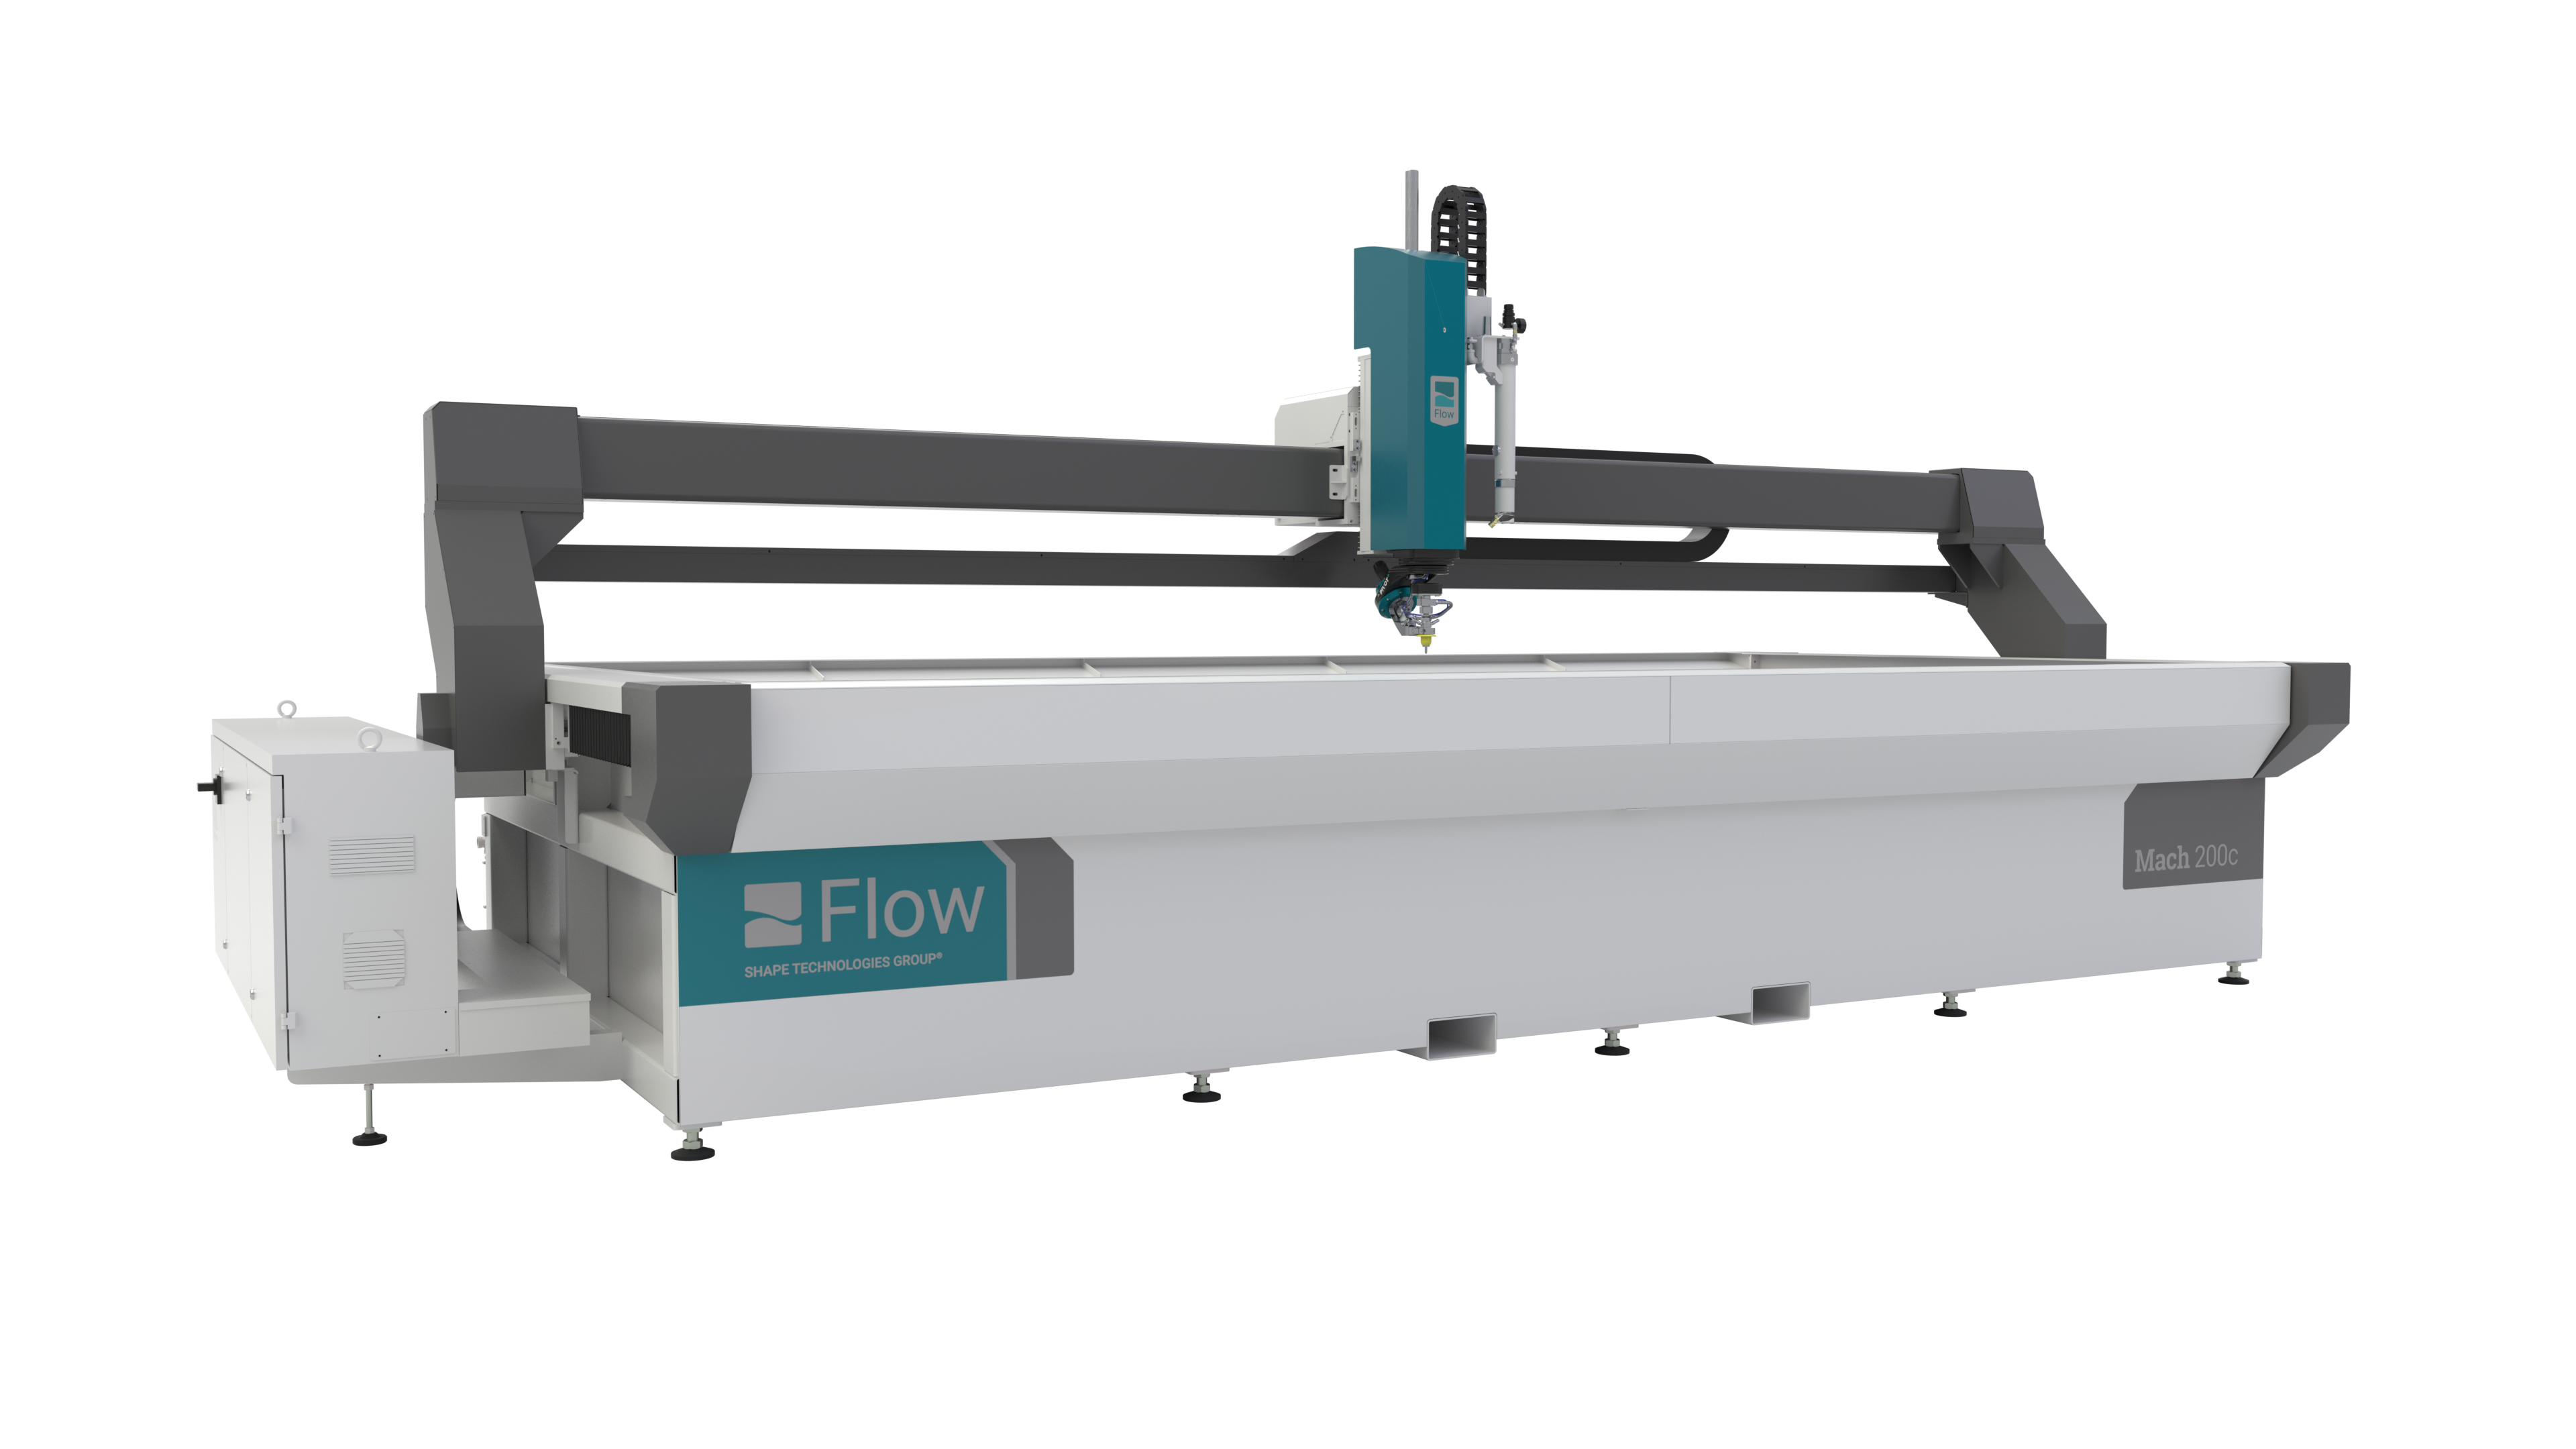 Flow Mach 200c Waterjet Machine